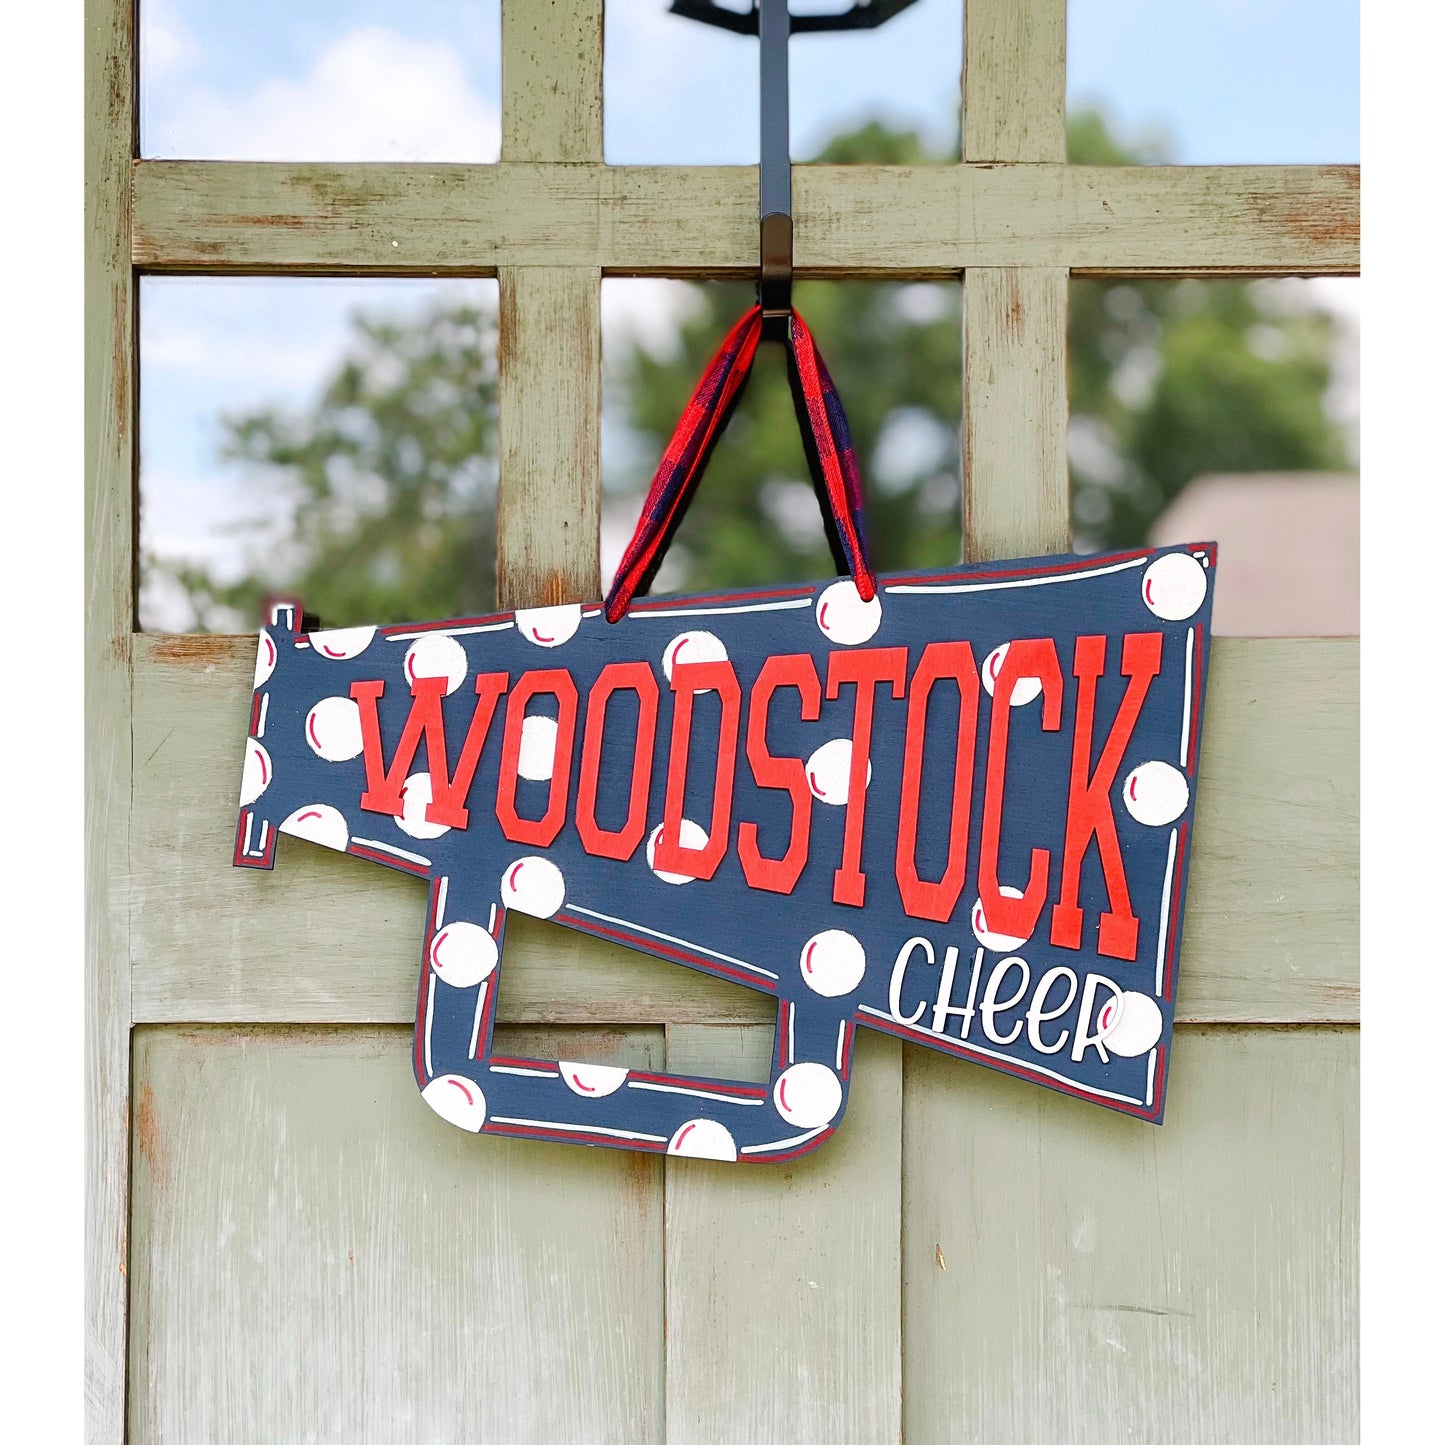 WHSBB Woodstock Cheer Door Hanger